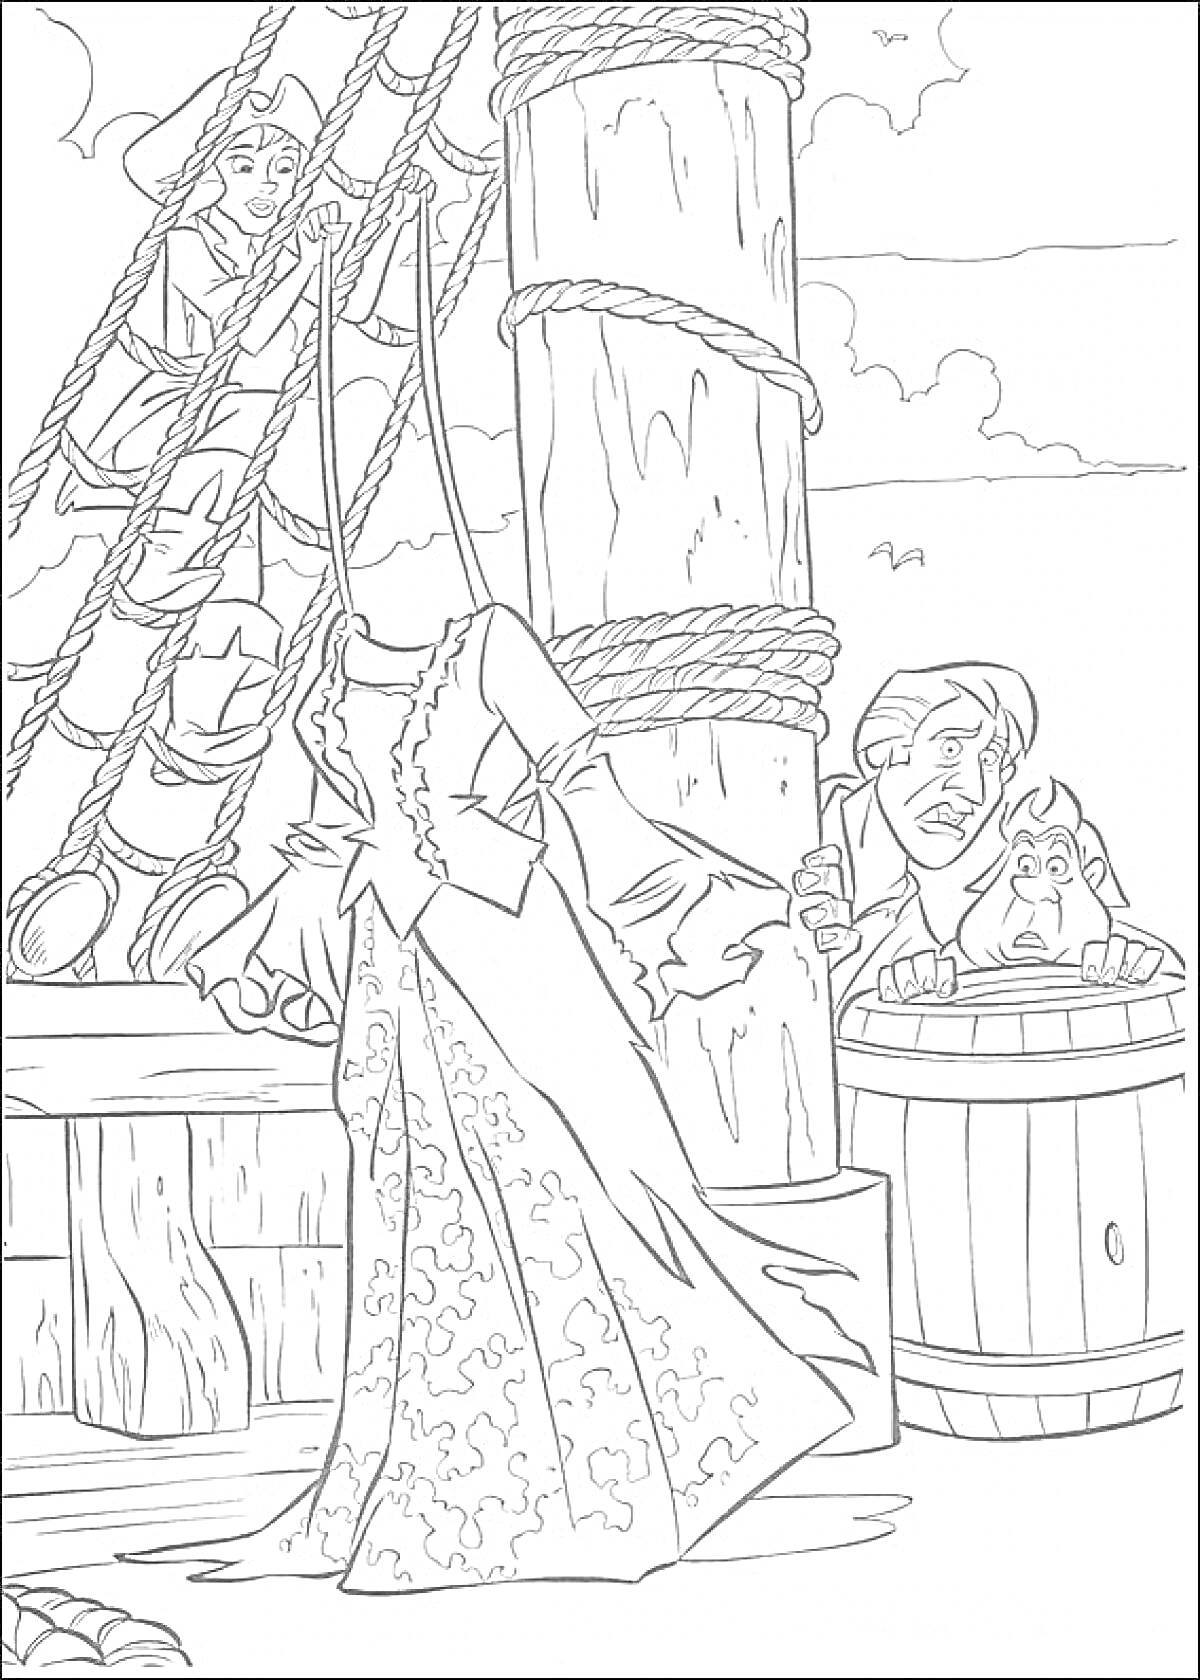 Раскраска Пираты на палубе корабля — два человека прячутся за бочкой, один человек на мачте